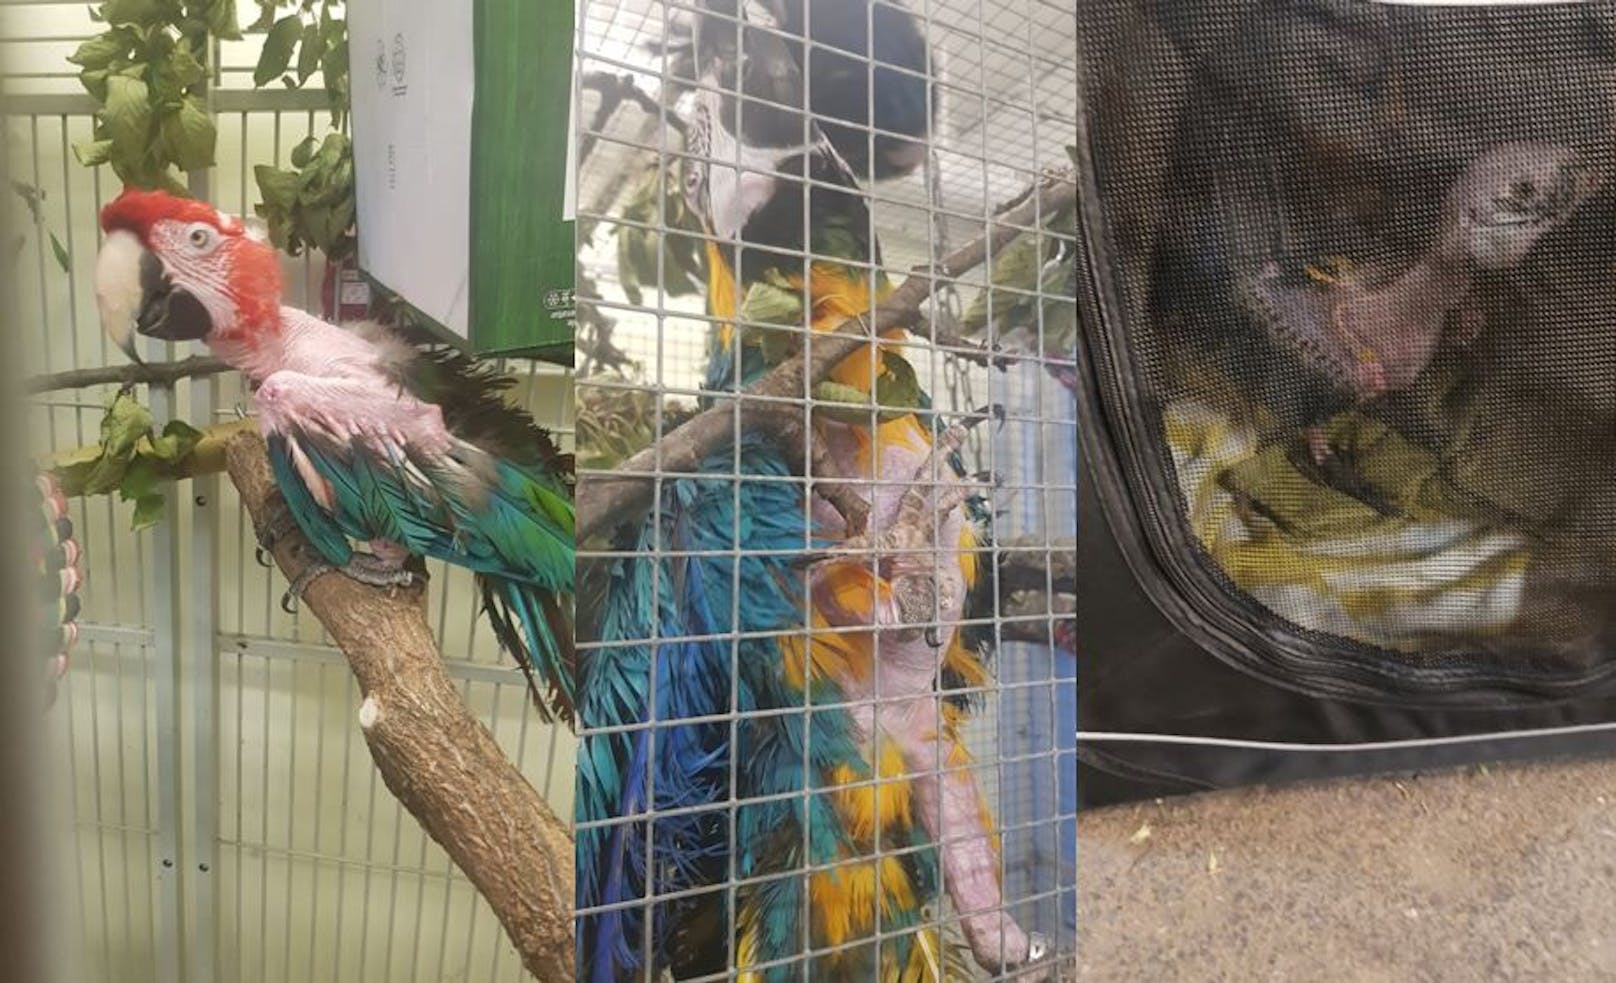 Die 3 Papageien mussten in zu kleinen Käfigen hausen.